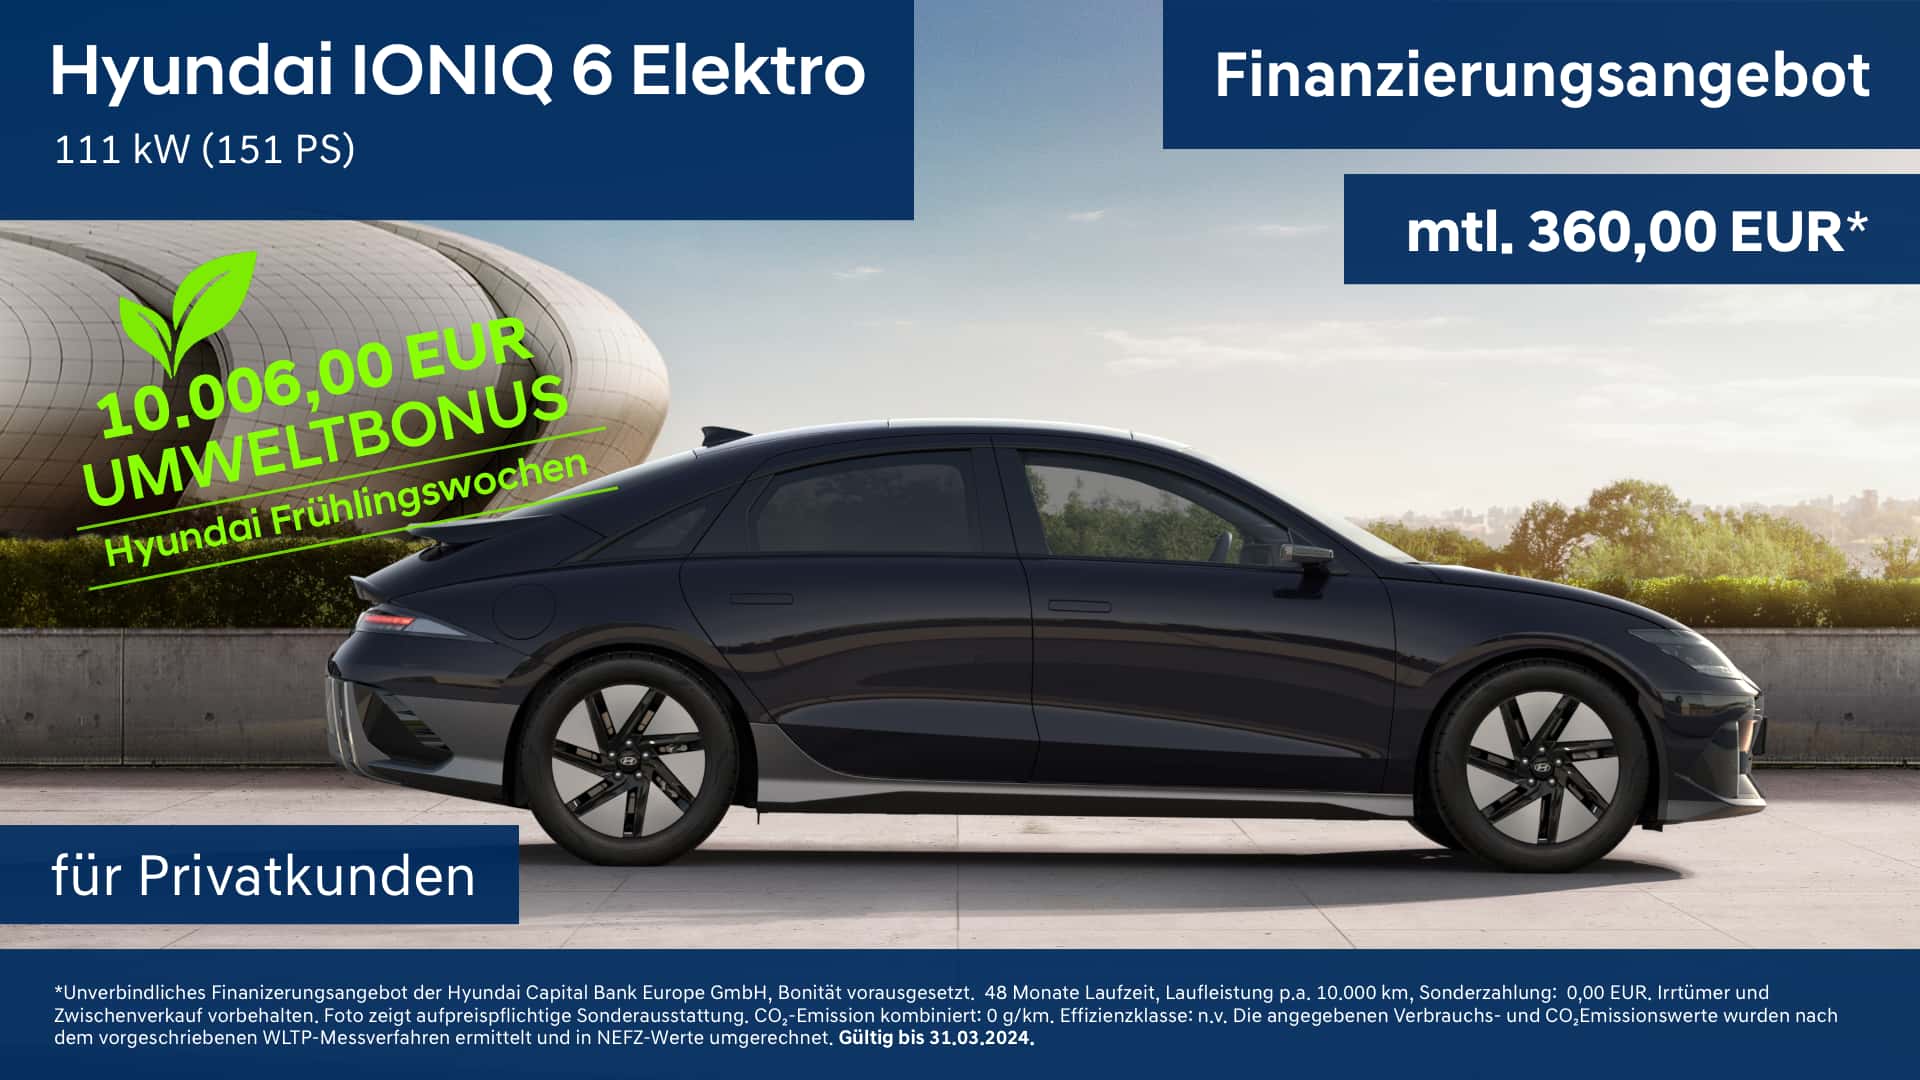 Hyundai IONIQ 6 Elektro Finanzierungsangebot für Privatkunden mit Umweltbonus